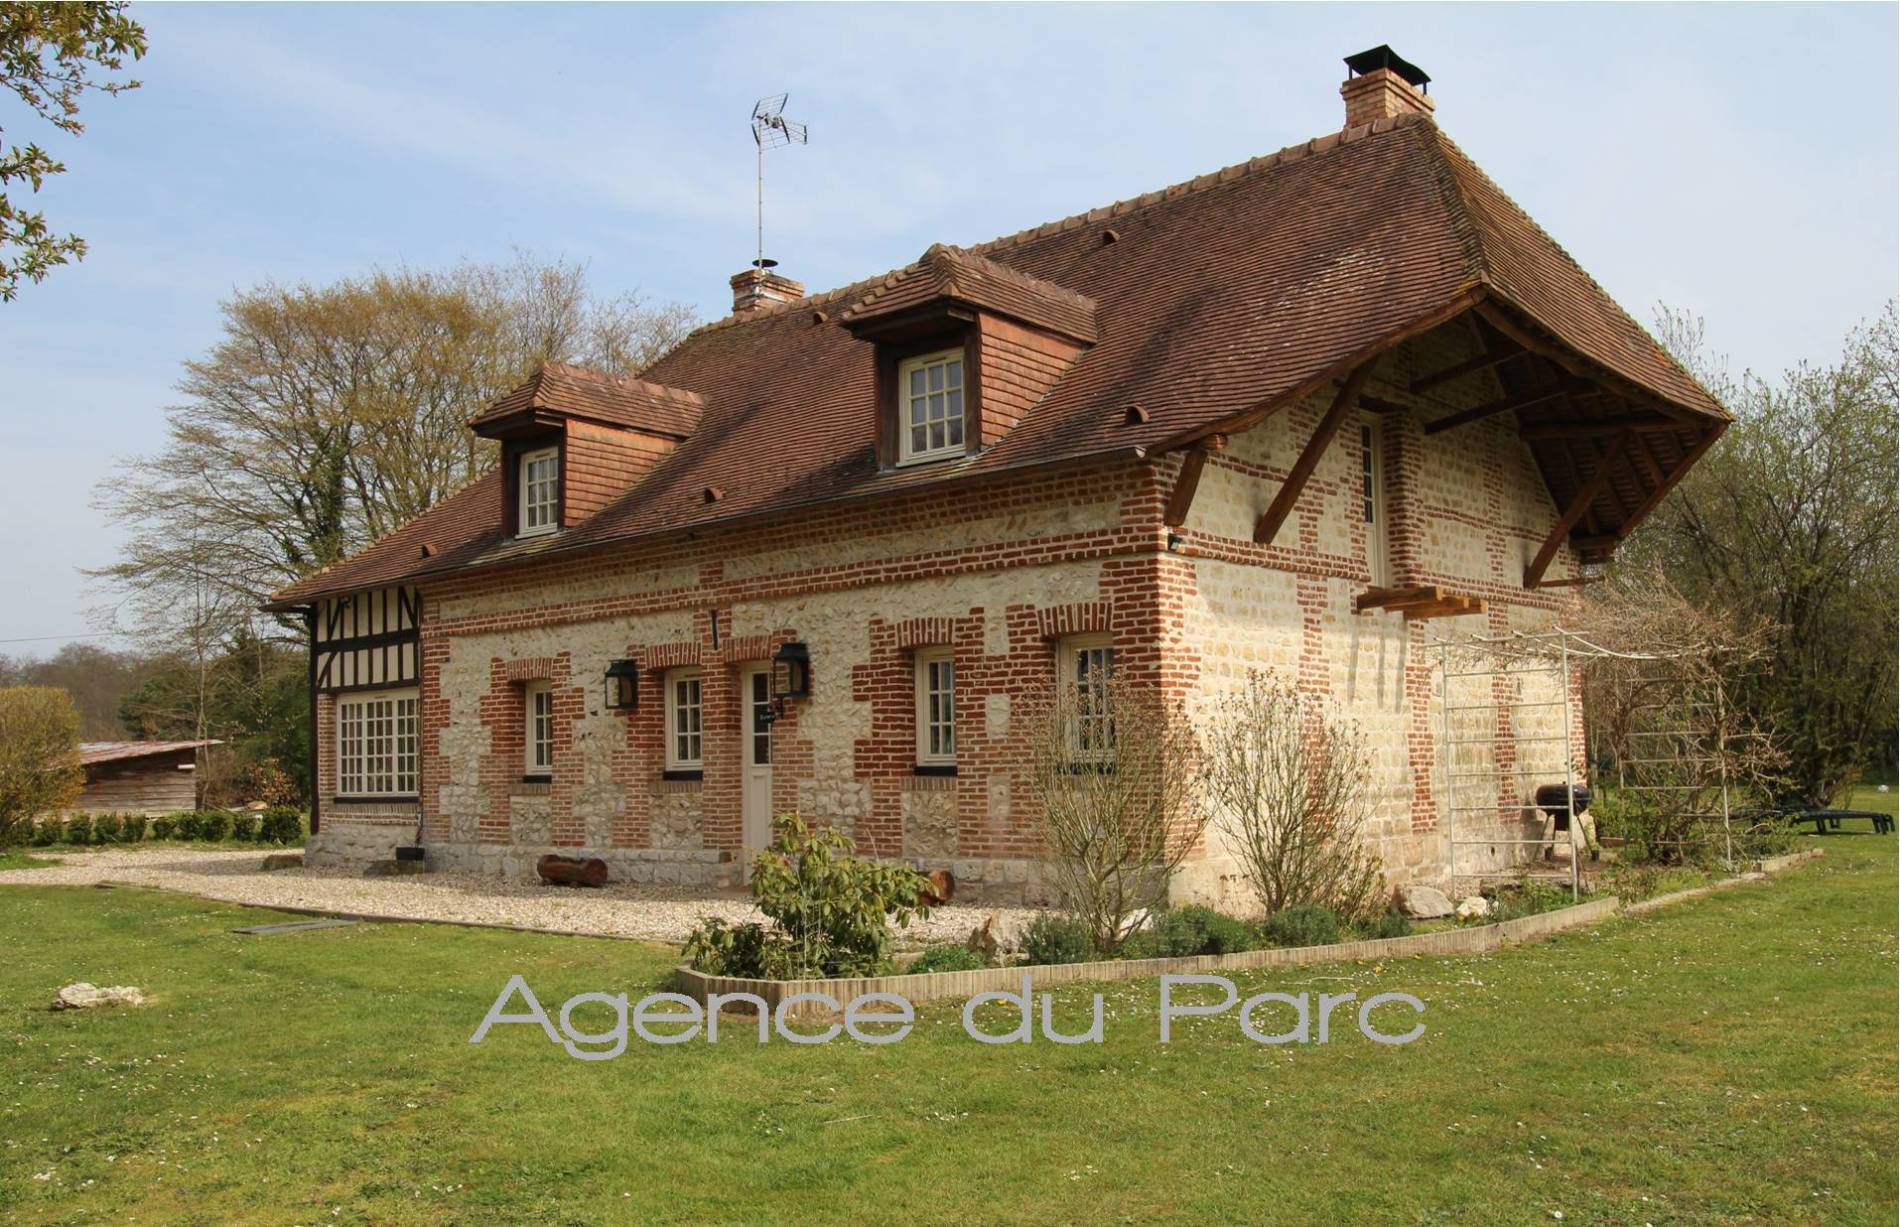 Vente d'une maison XVIIIème, dans un environnement exceptionnel, au cœur de la forêt de Brotonne, en Normandie, à moins de 2 h de Paris